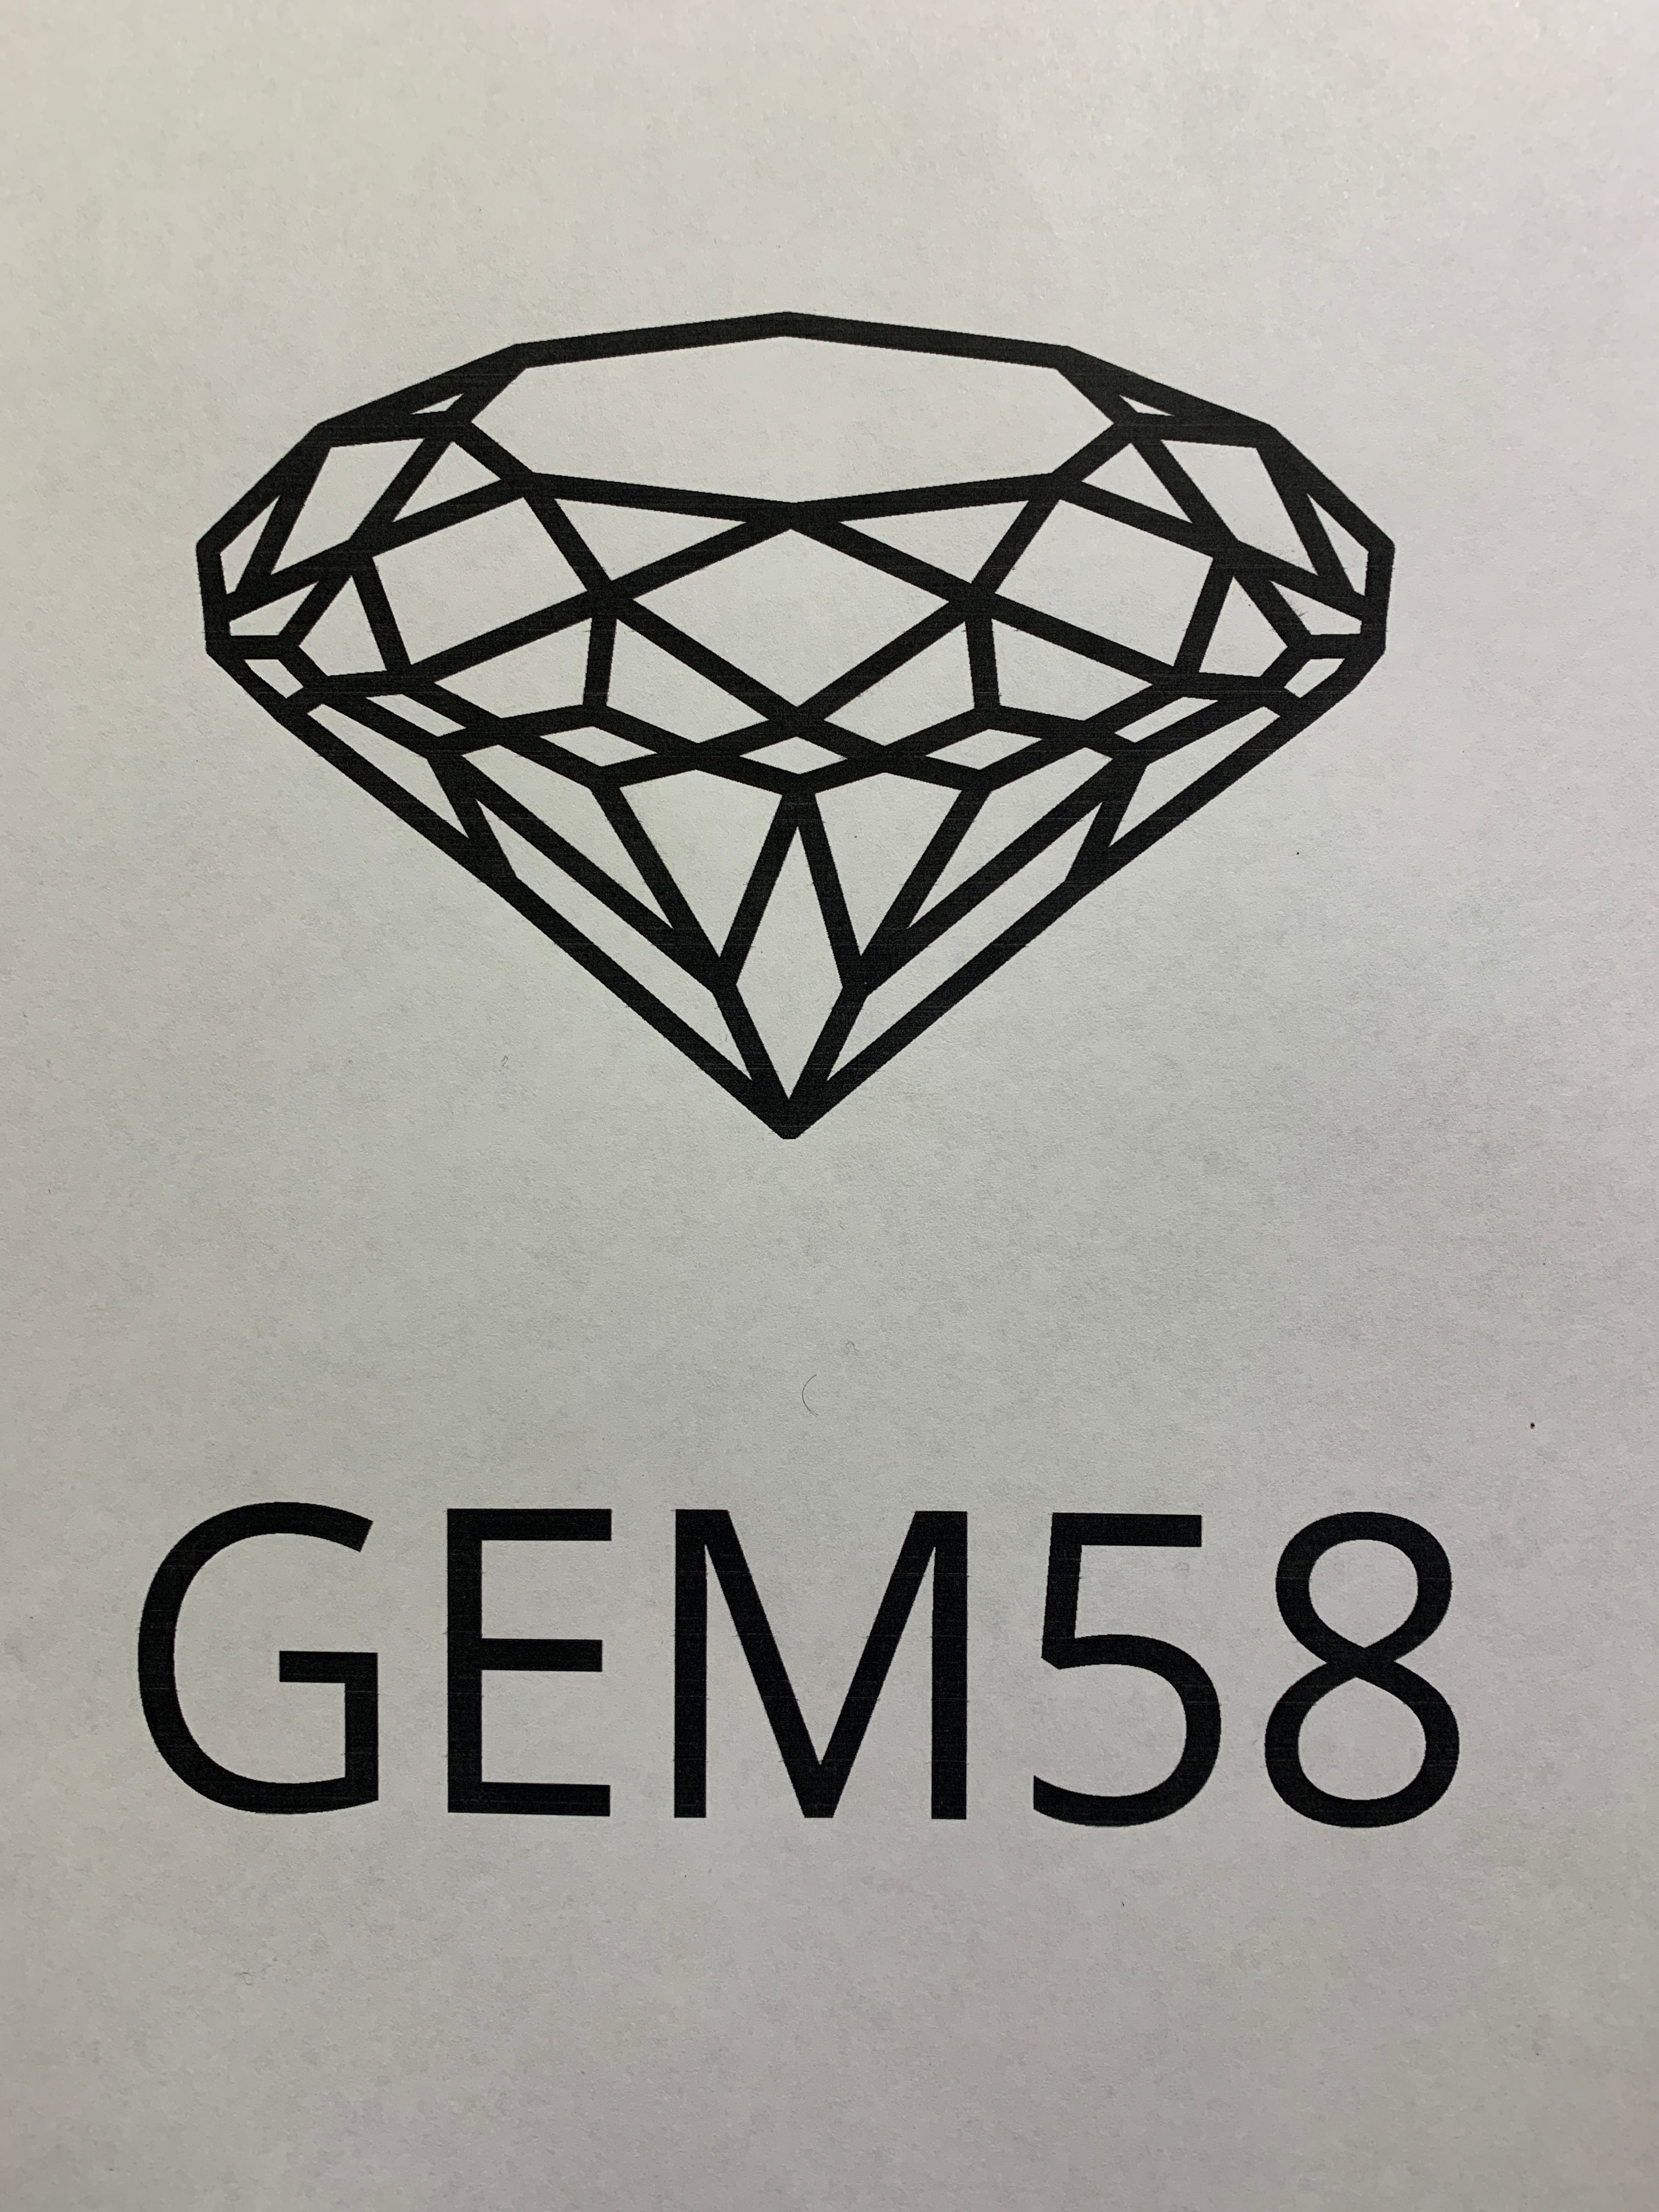 Gem58